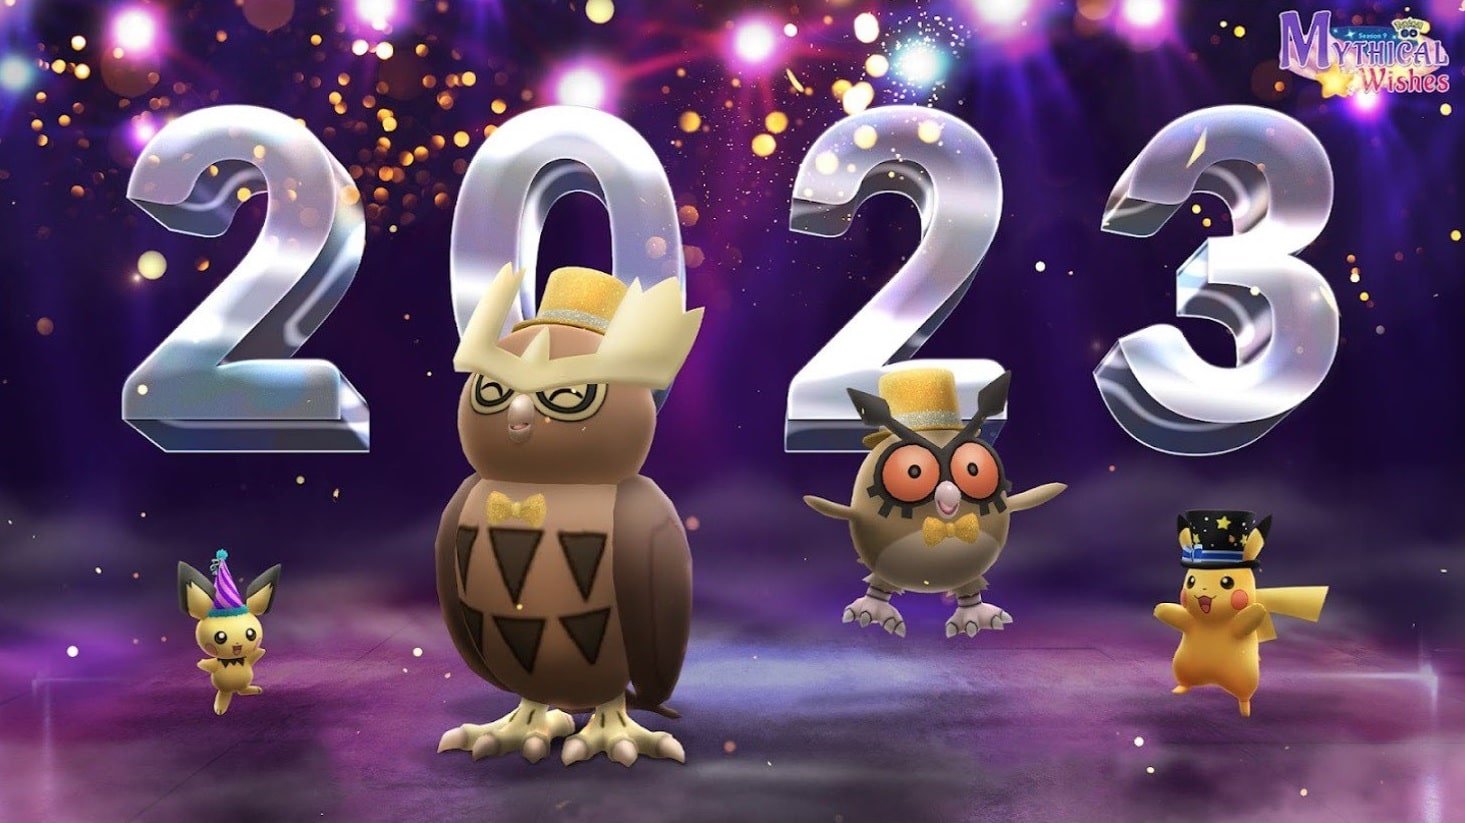 All Raids in Pokemon GO 2023 Lunar New Year - Legendary, Mega & More